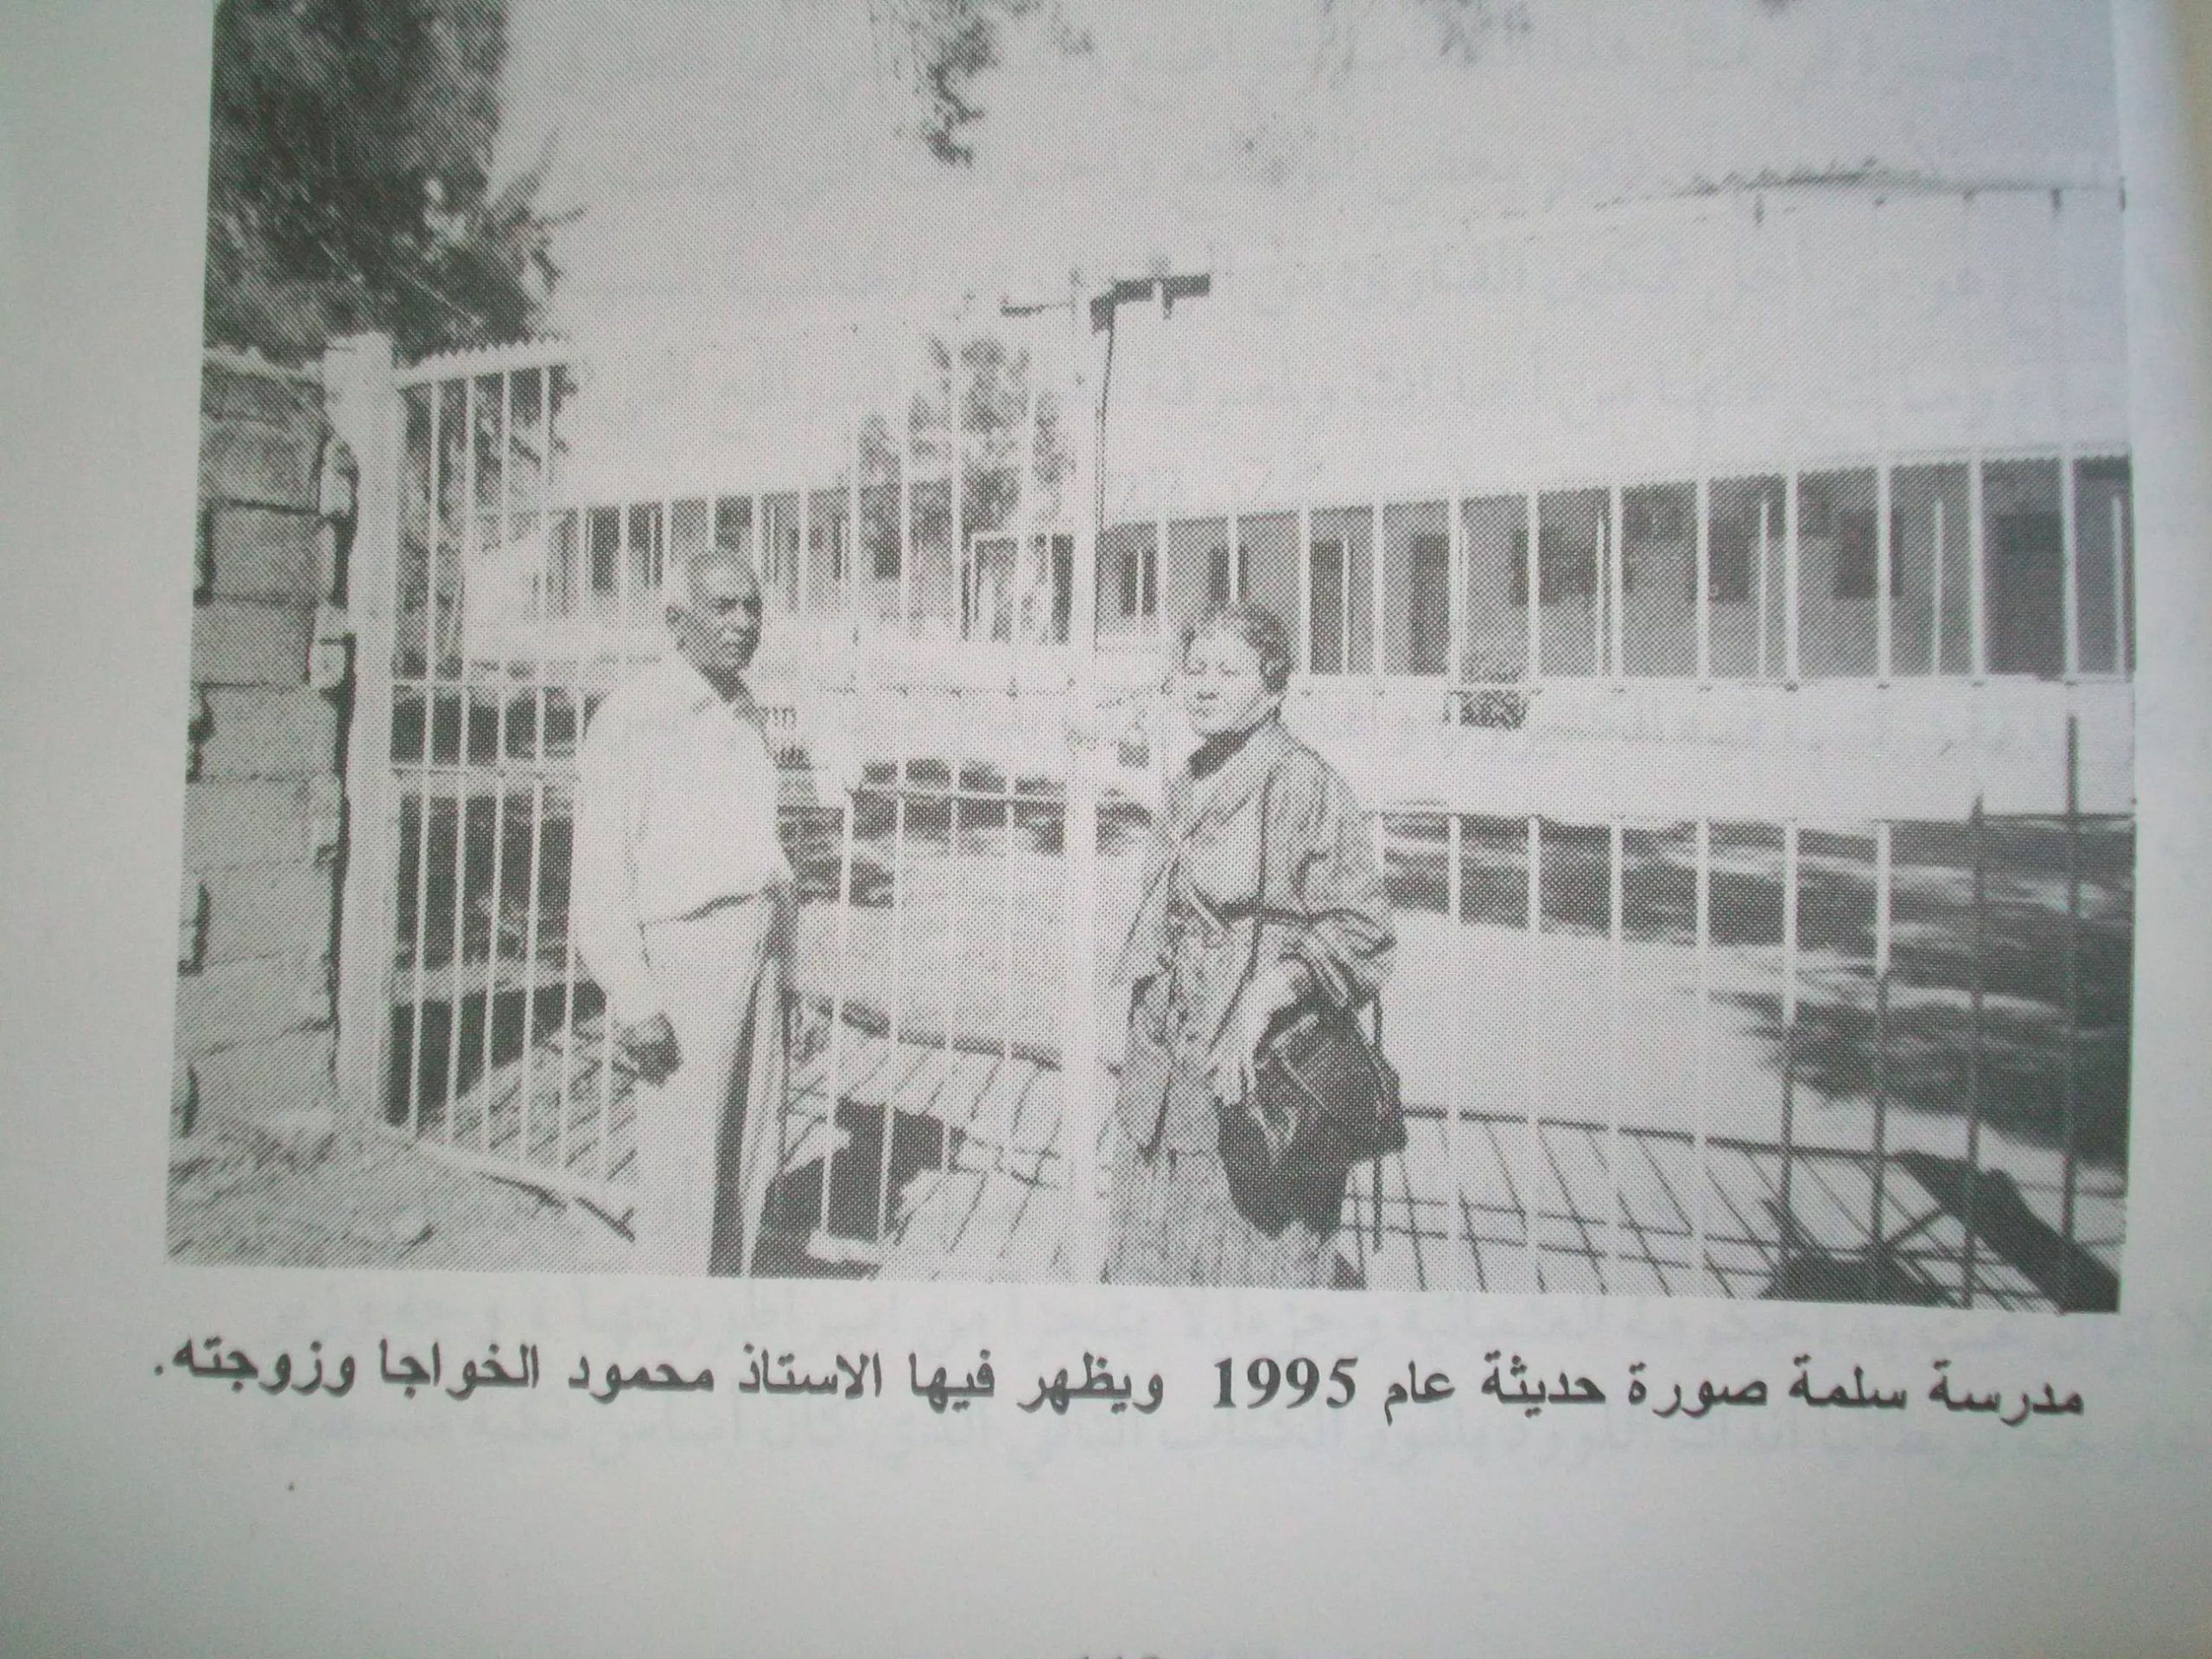 صورة مدرسة بلدة سلمة الباسلة فى فلسطين المحتلة